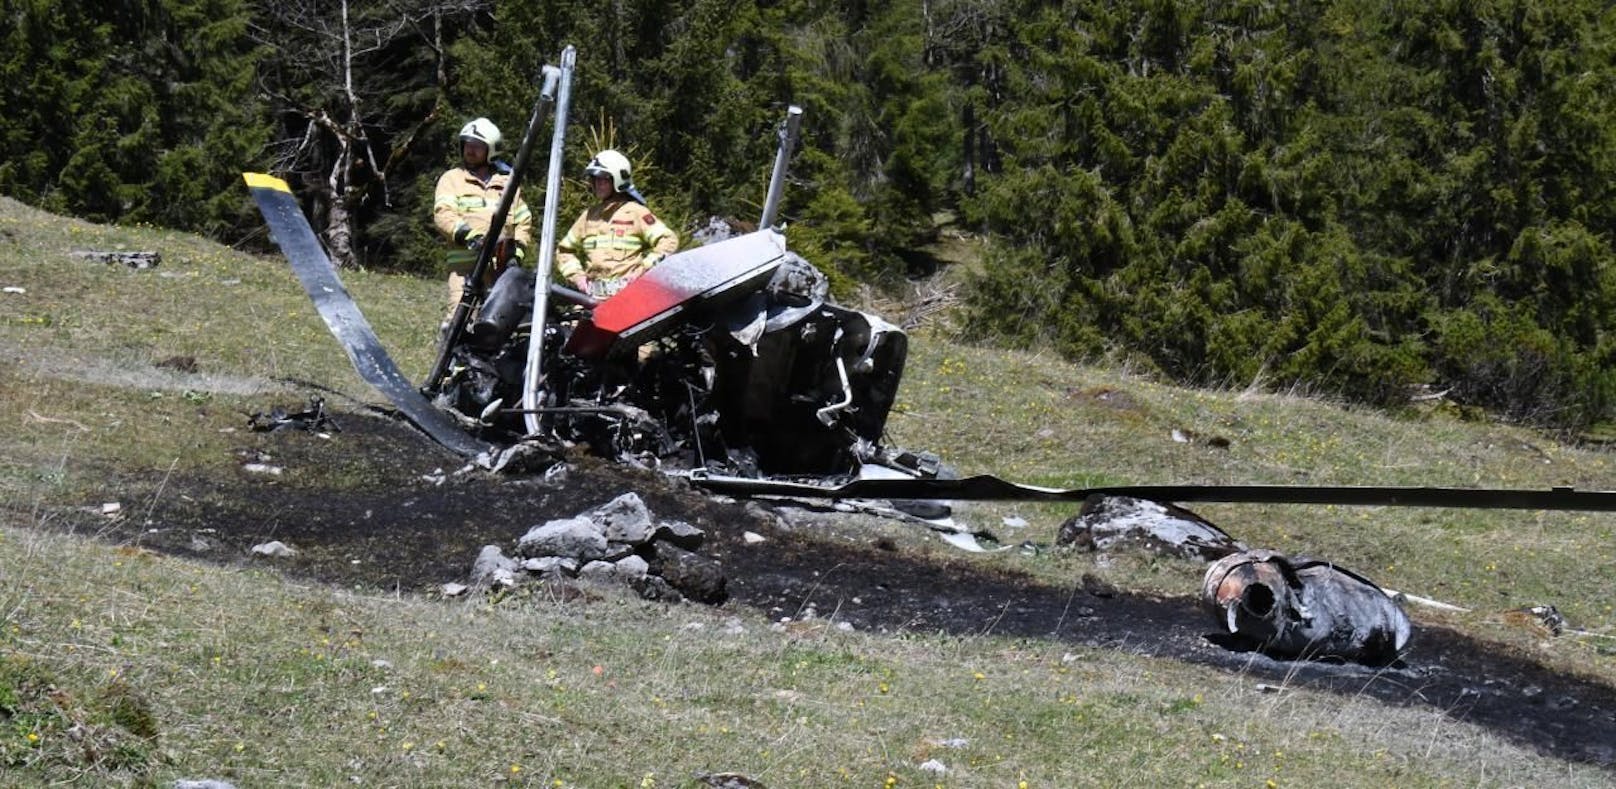 Zwei Menschen bei Heli-Absturz in Tirol getötet